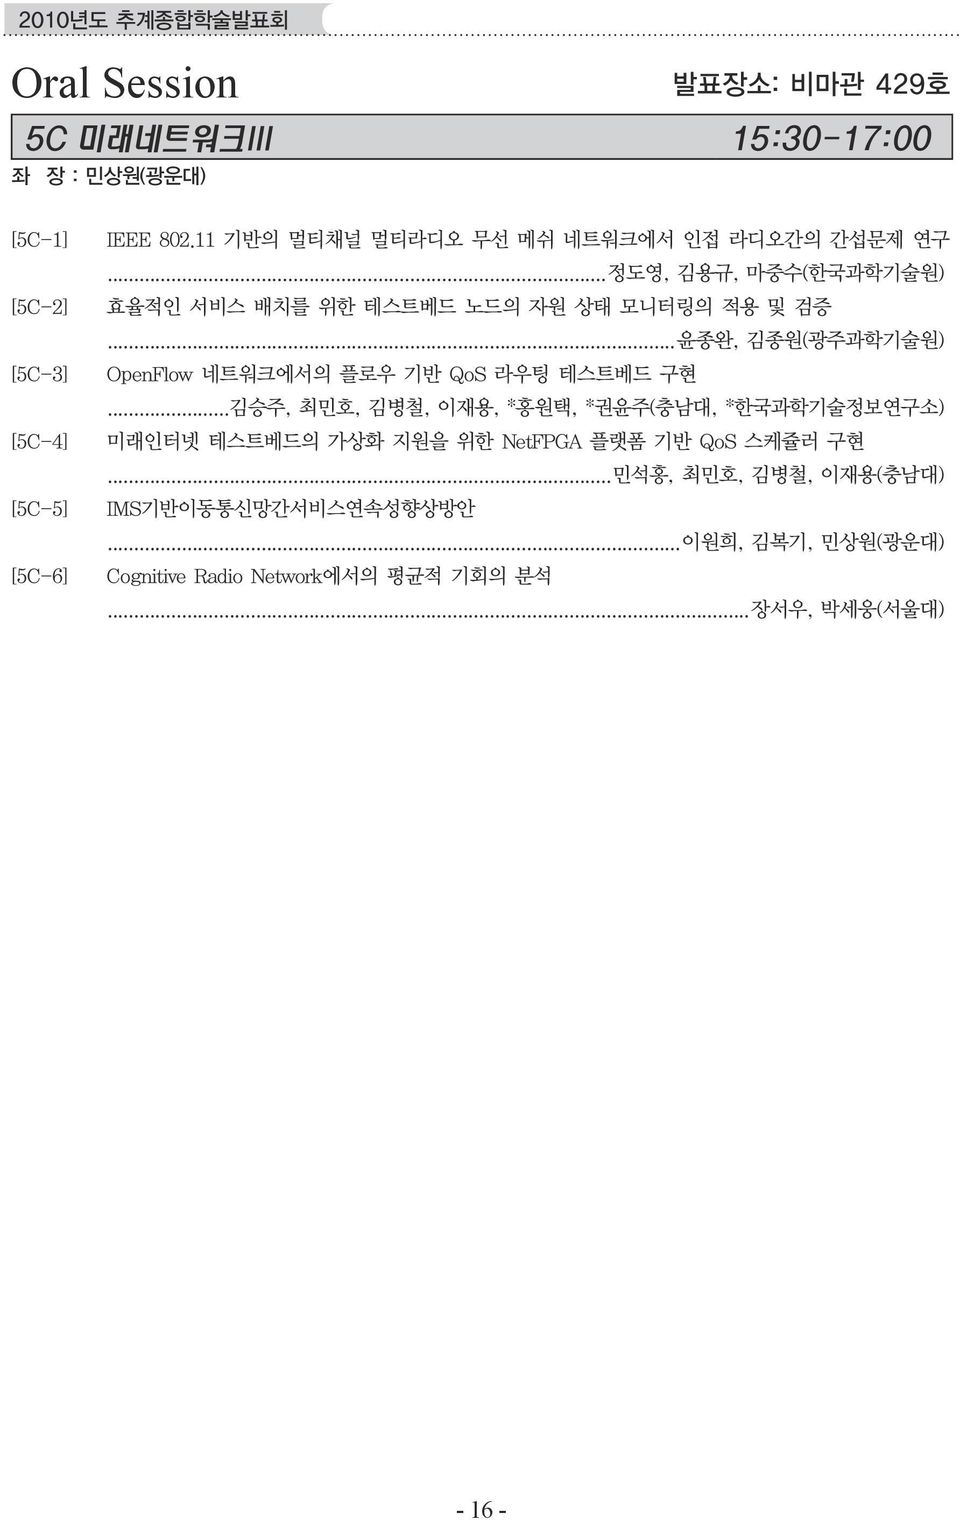 ..윤종완, 김종원(광주과학기술원) OpenFlow 네트워크에서의 플로우 기반 QoS 라우팅 테스트베드 구현.